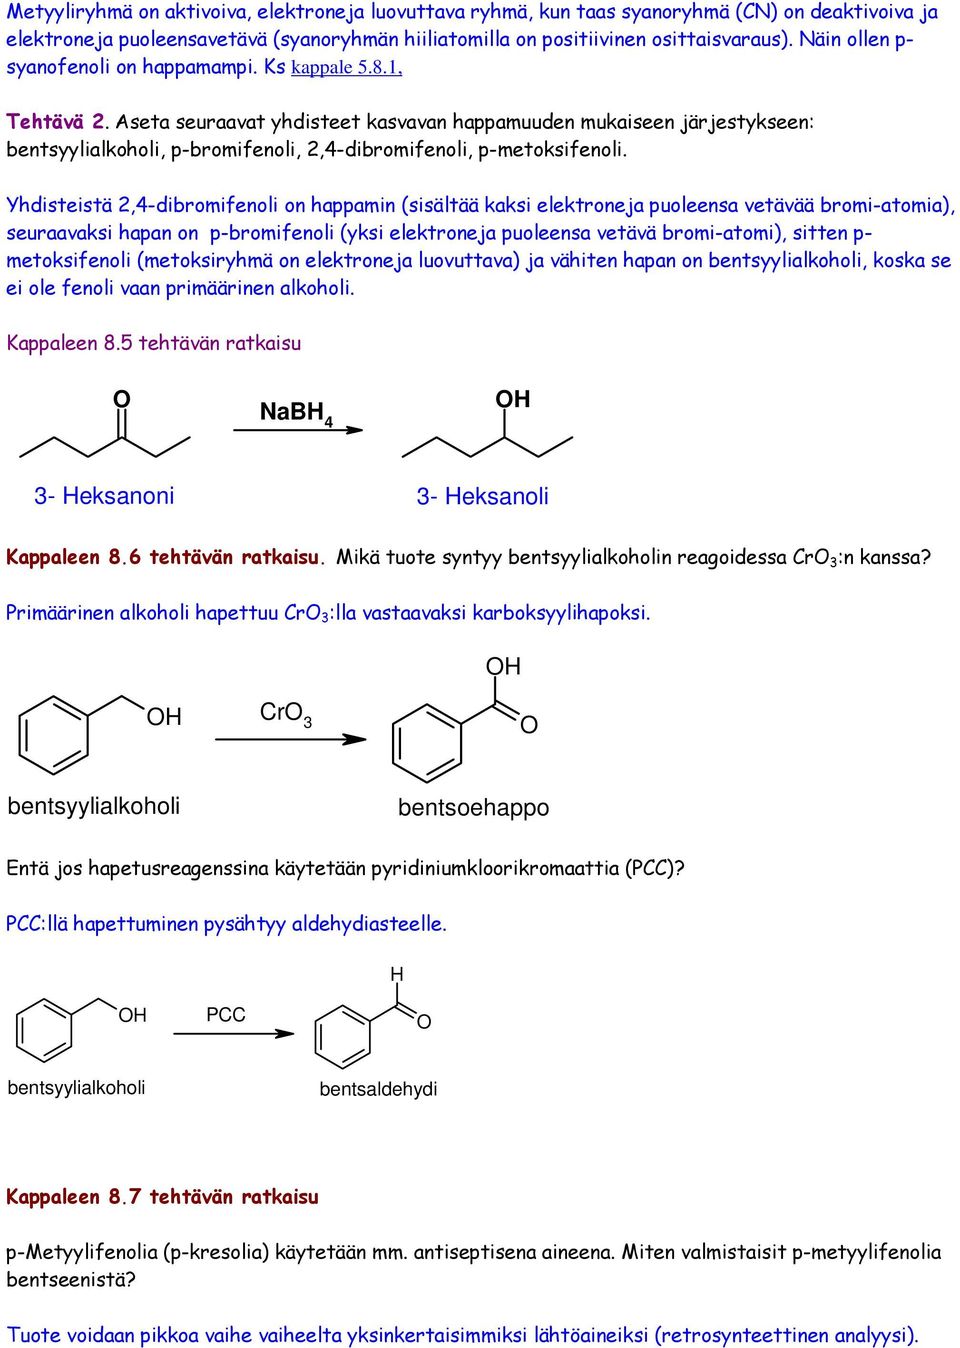 Aseta seuraavat yhdisteet kasvavan happamuuden mukaiseen järjestykseen: bentsyylialkoholi, p-bromifenoli, 2,4-dibromifenoli, p-metoksifenoli.